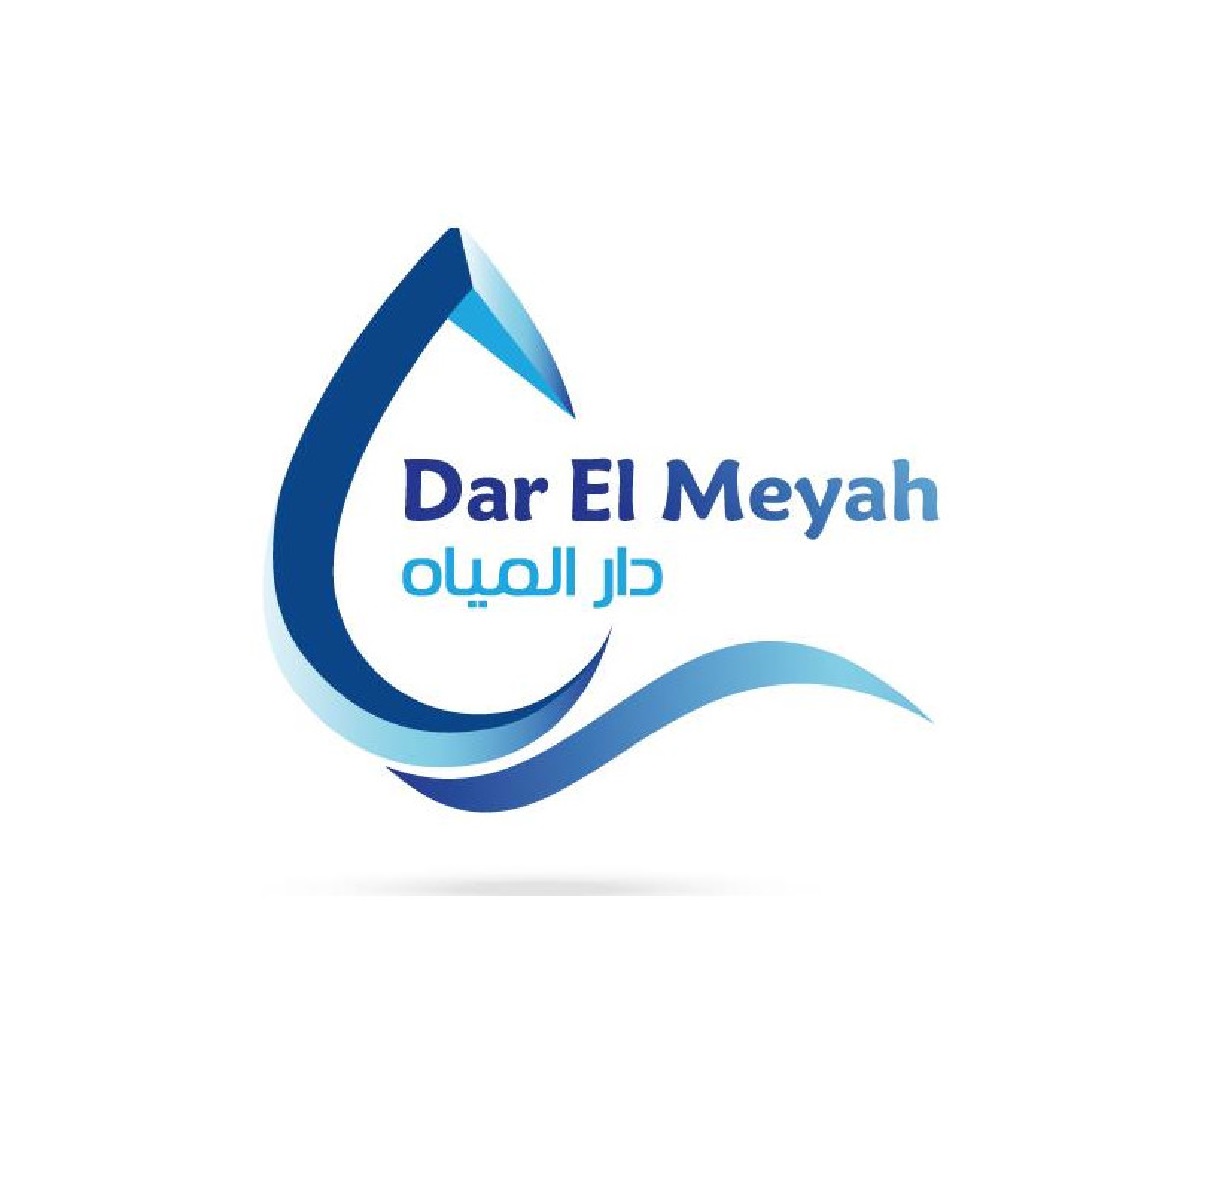 Dar El Meyah